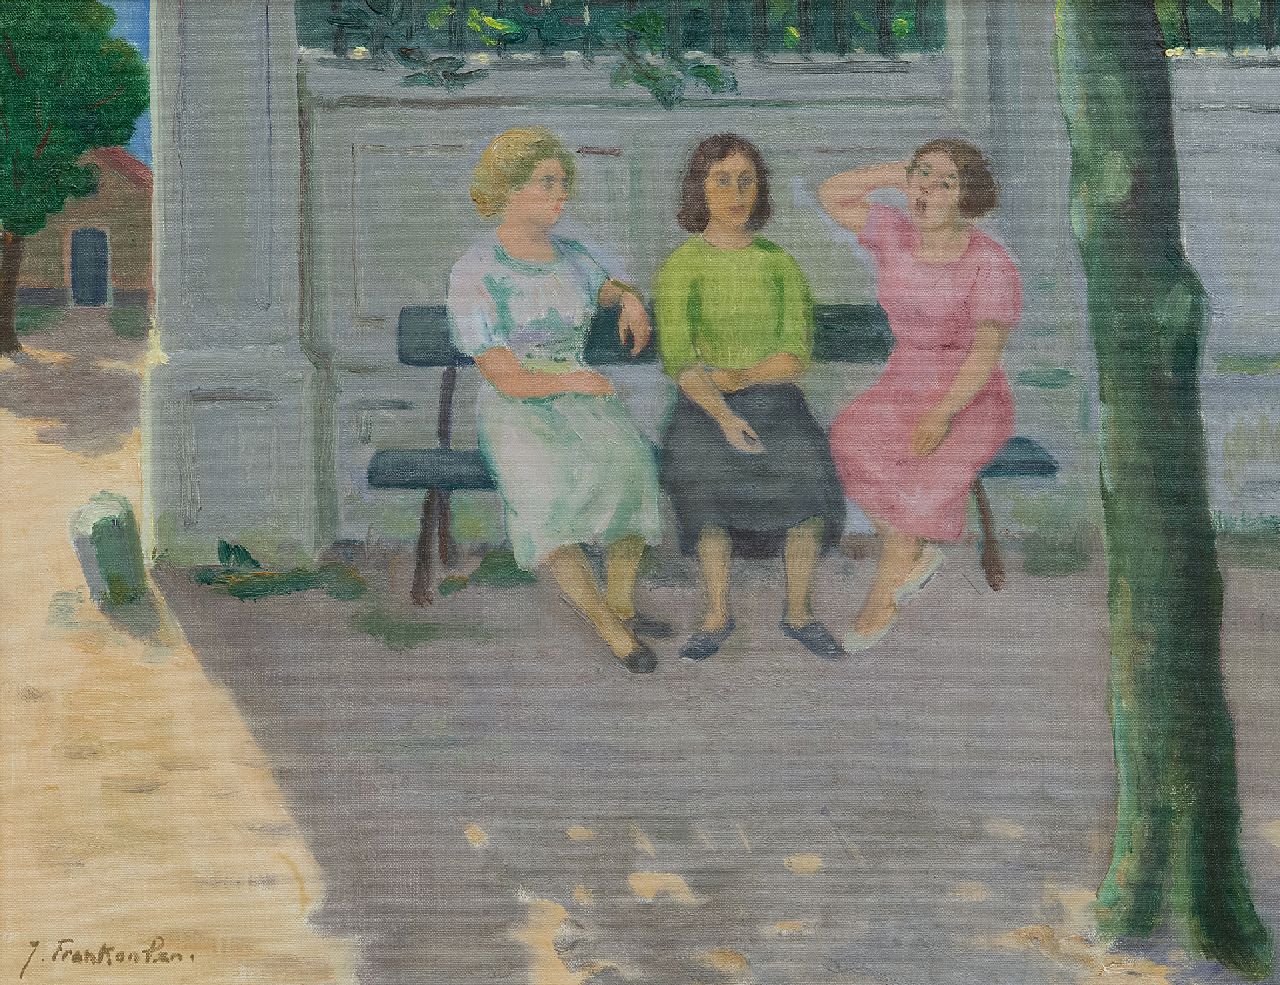 Franken J.P.J.  | Joannes Petrus Josephus 'Jan' Franken | Schilderijen te koop aangeboden | Drie vrouwen op een bank, olieverf op doek 35,4 x 45,2 cm, gesigneerd linksonder